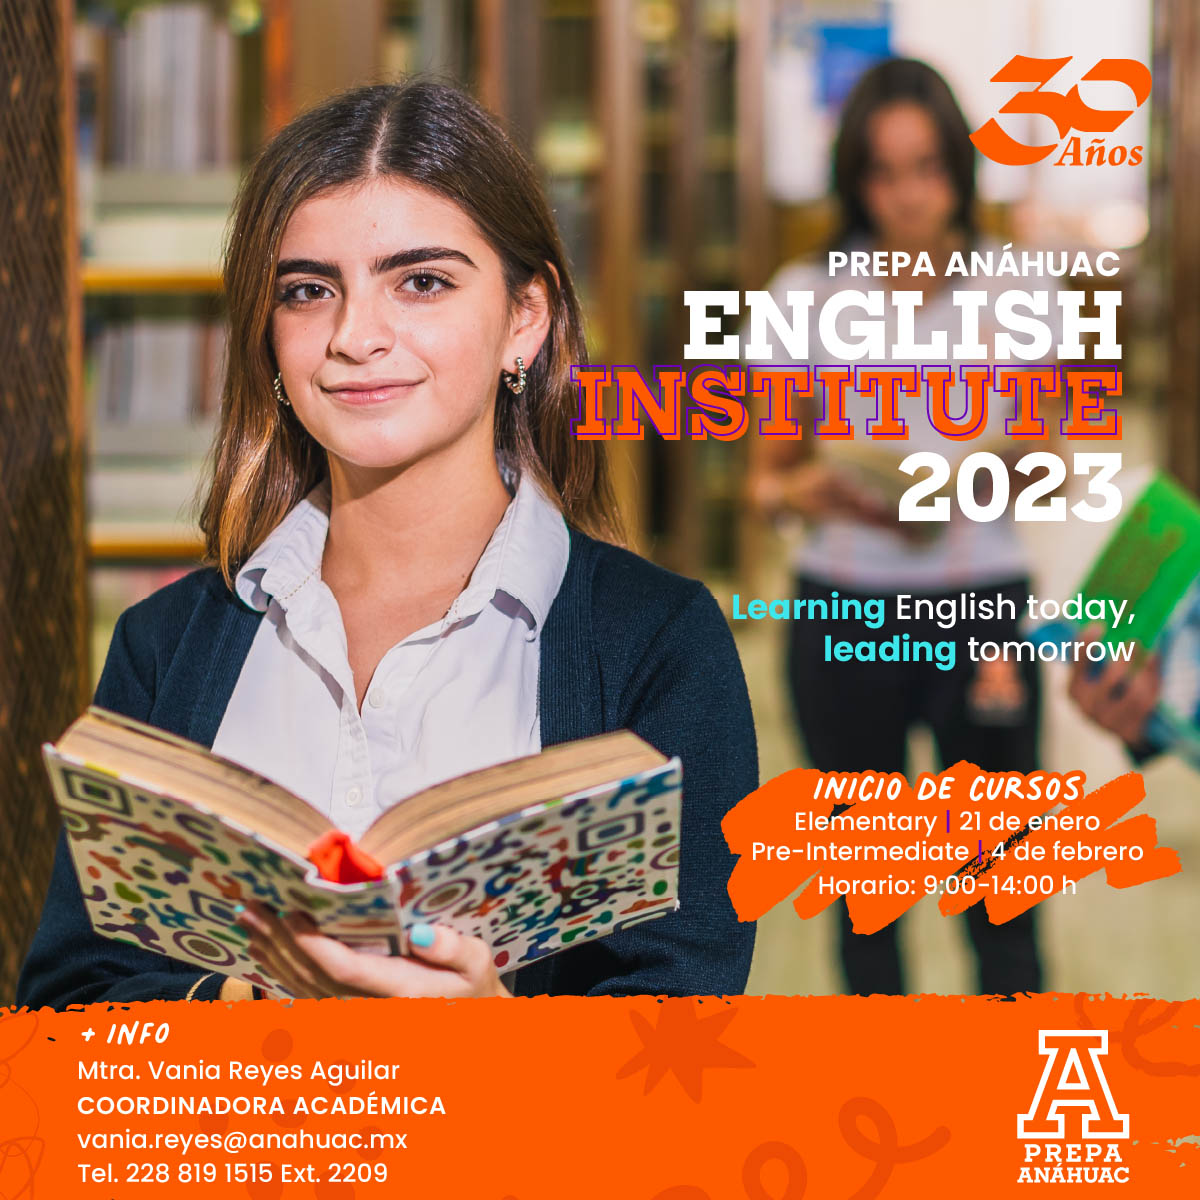 English Institute 2023